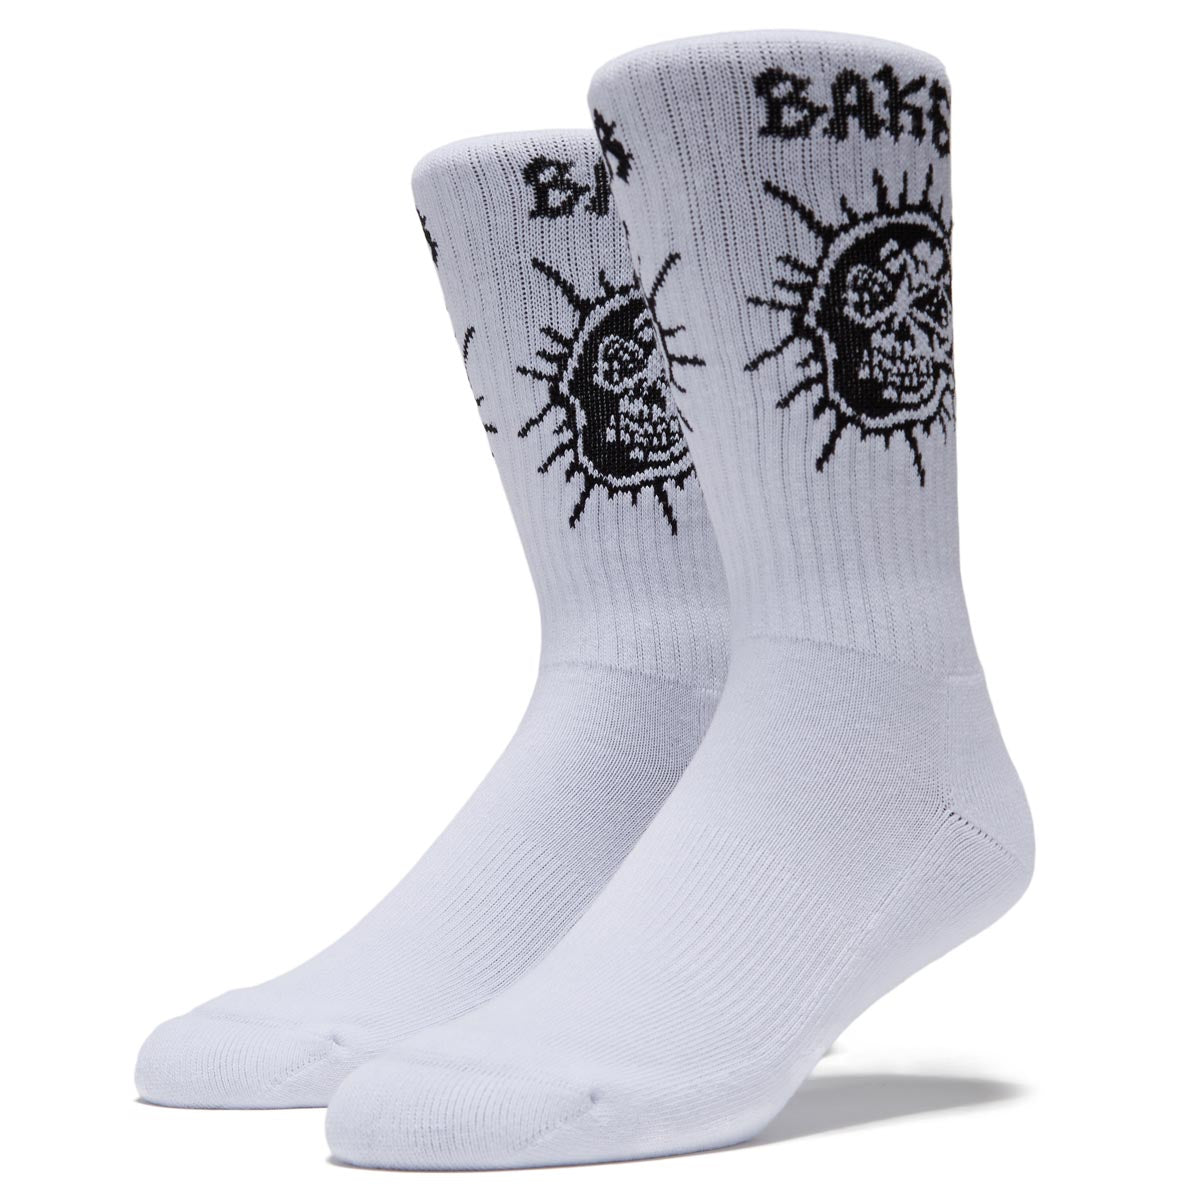 Baker Fury Socks - White image 1